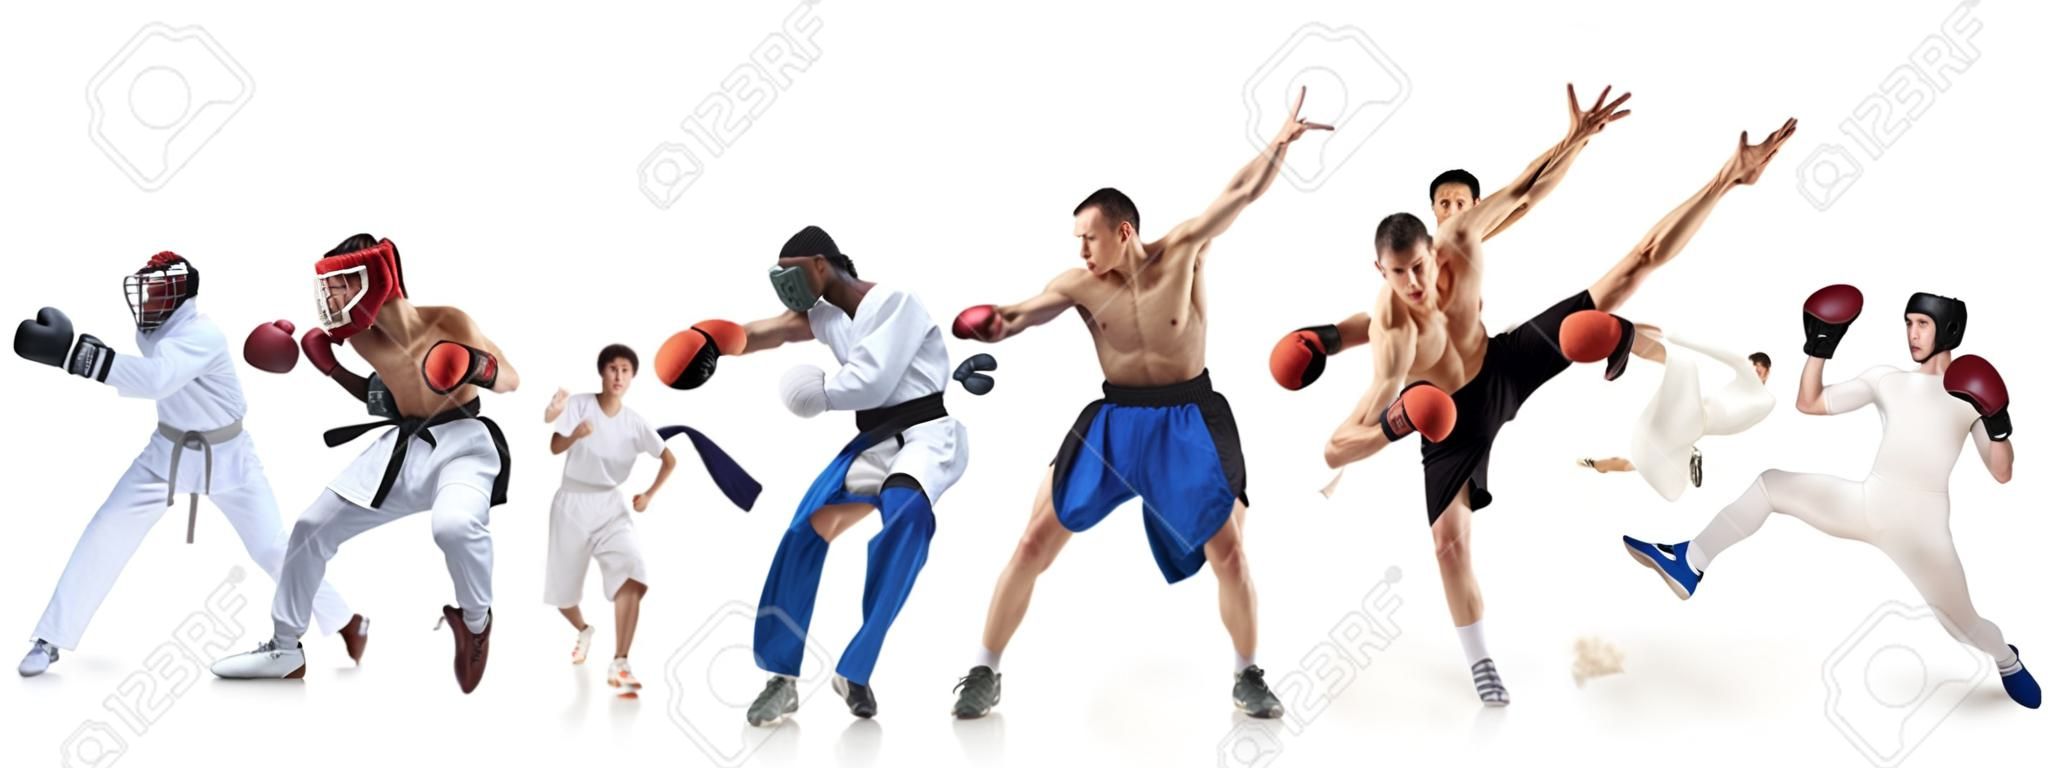 Kolaż sportowy o boksie, piłce nożnej, futbolu amerykańskim, koszykówce, hokeju na lodzie, szermierce, joggingu, taekwondo, tenisie